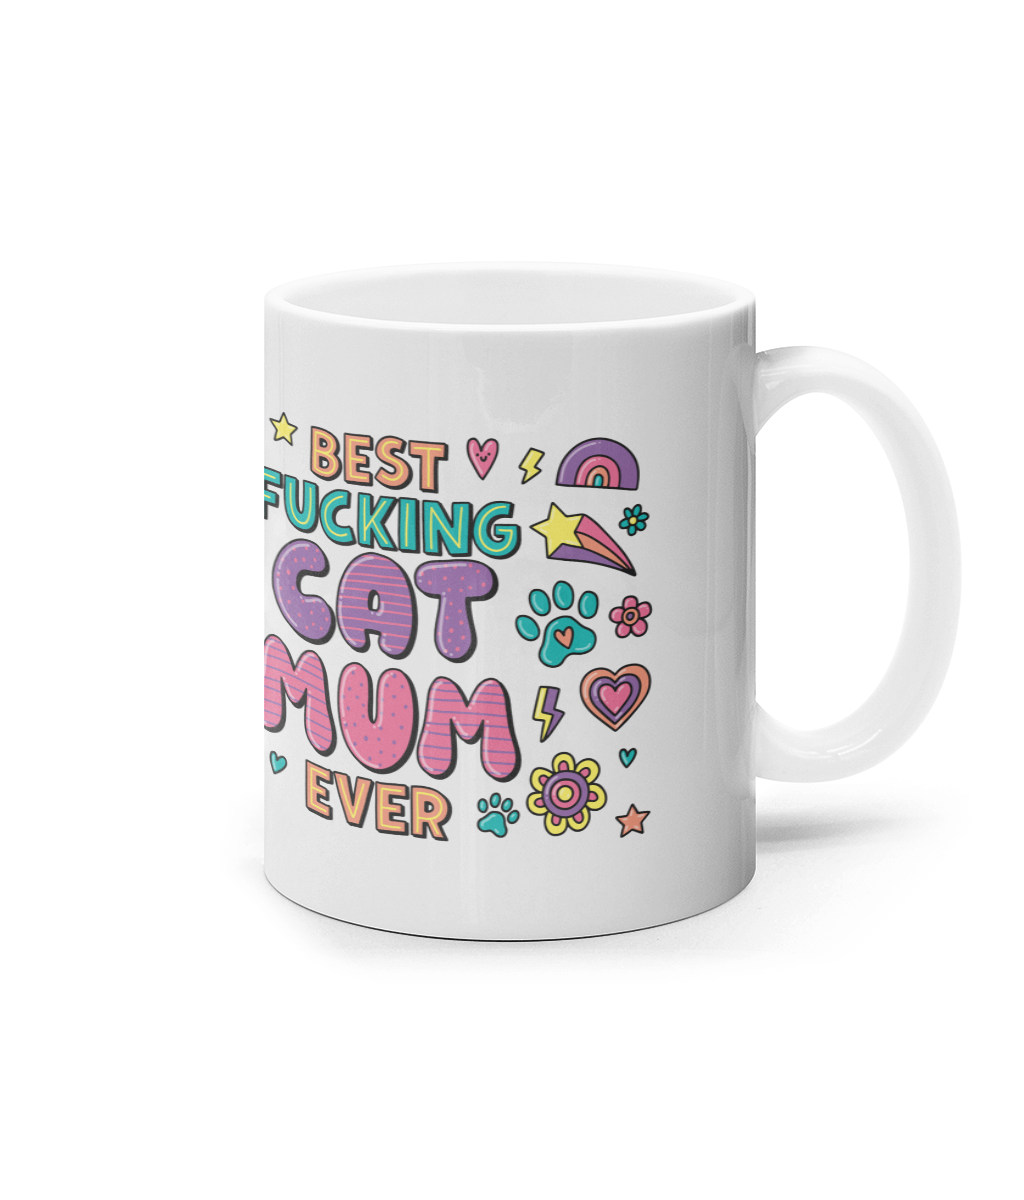 Best Fucking Cat Mum Mug